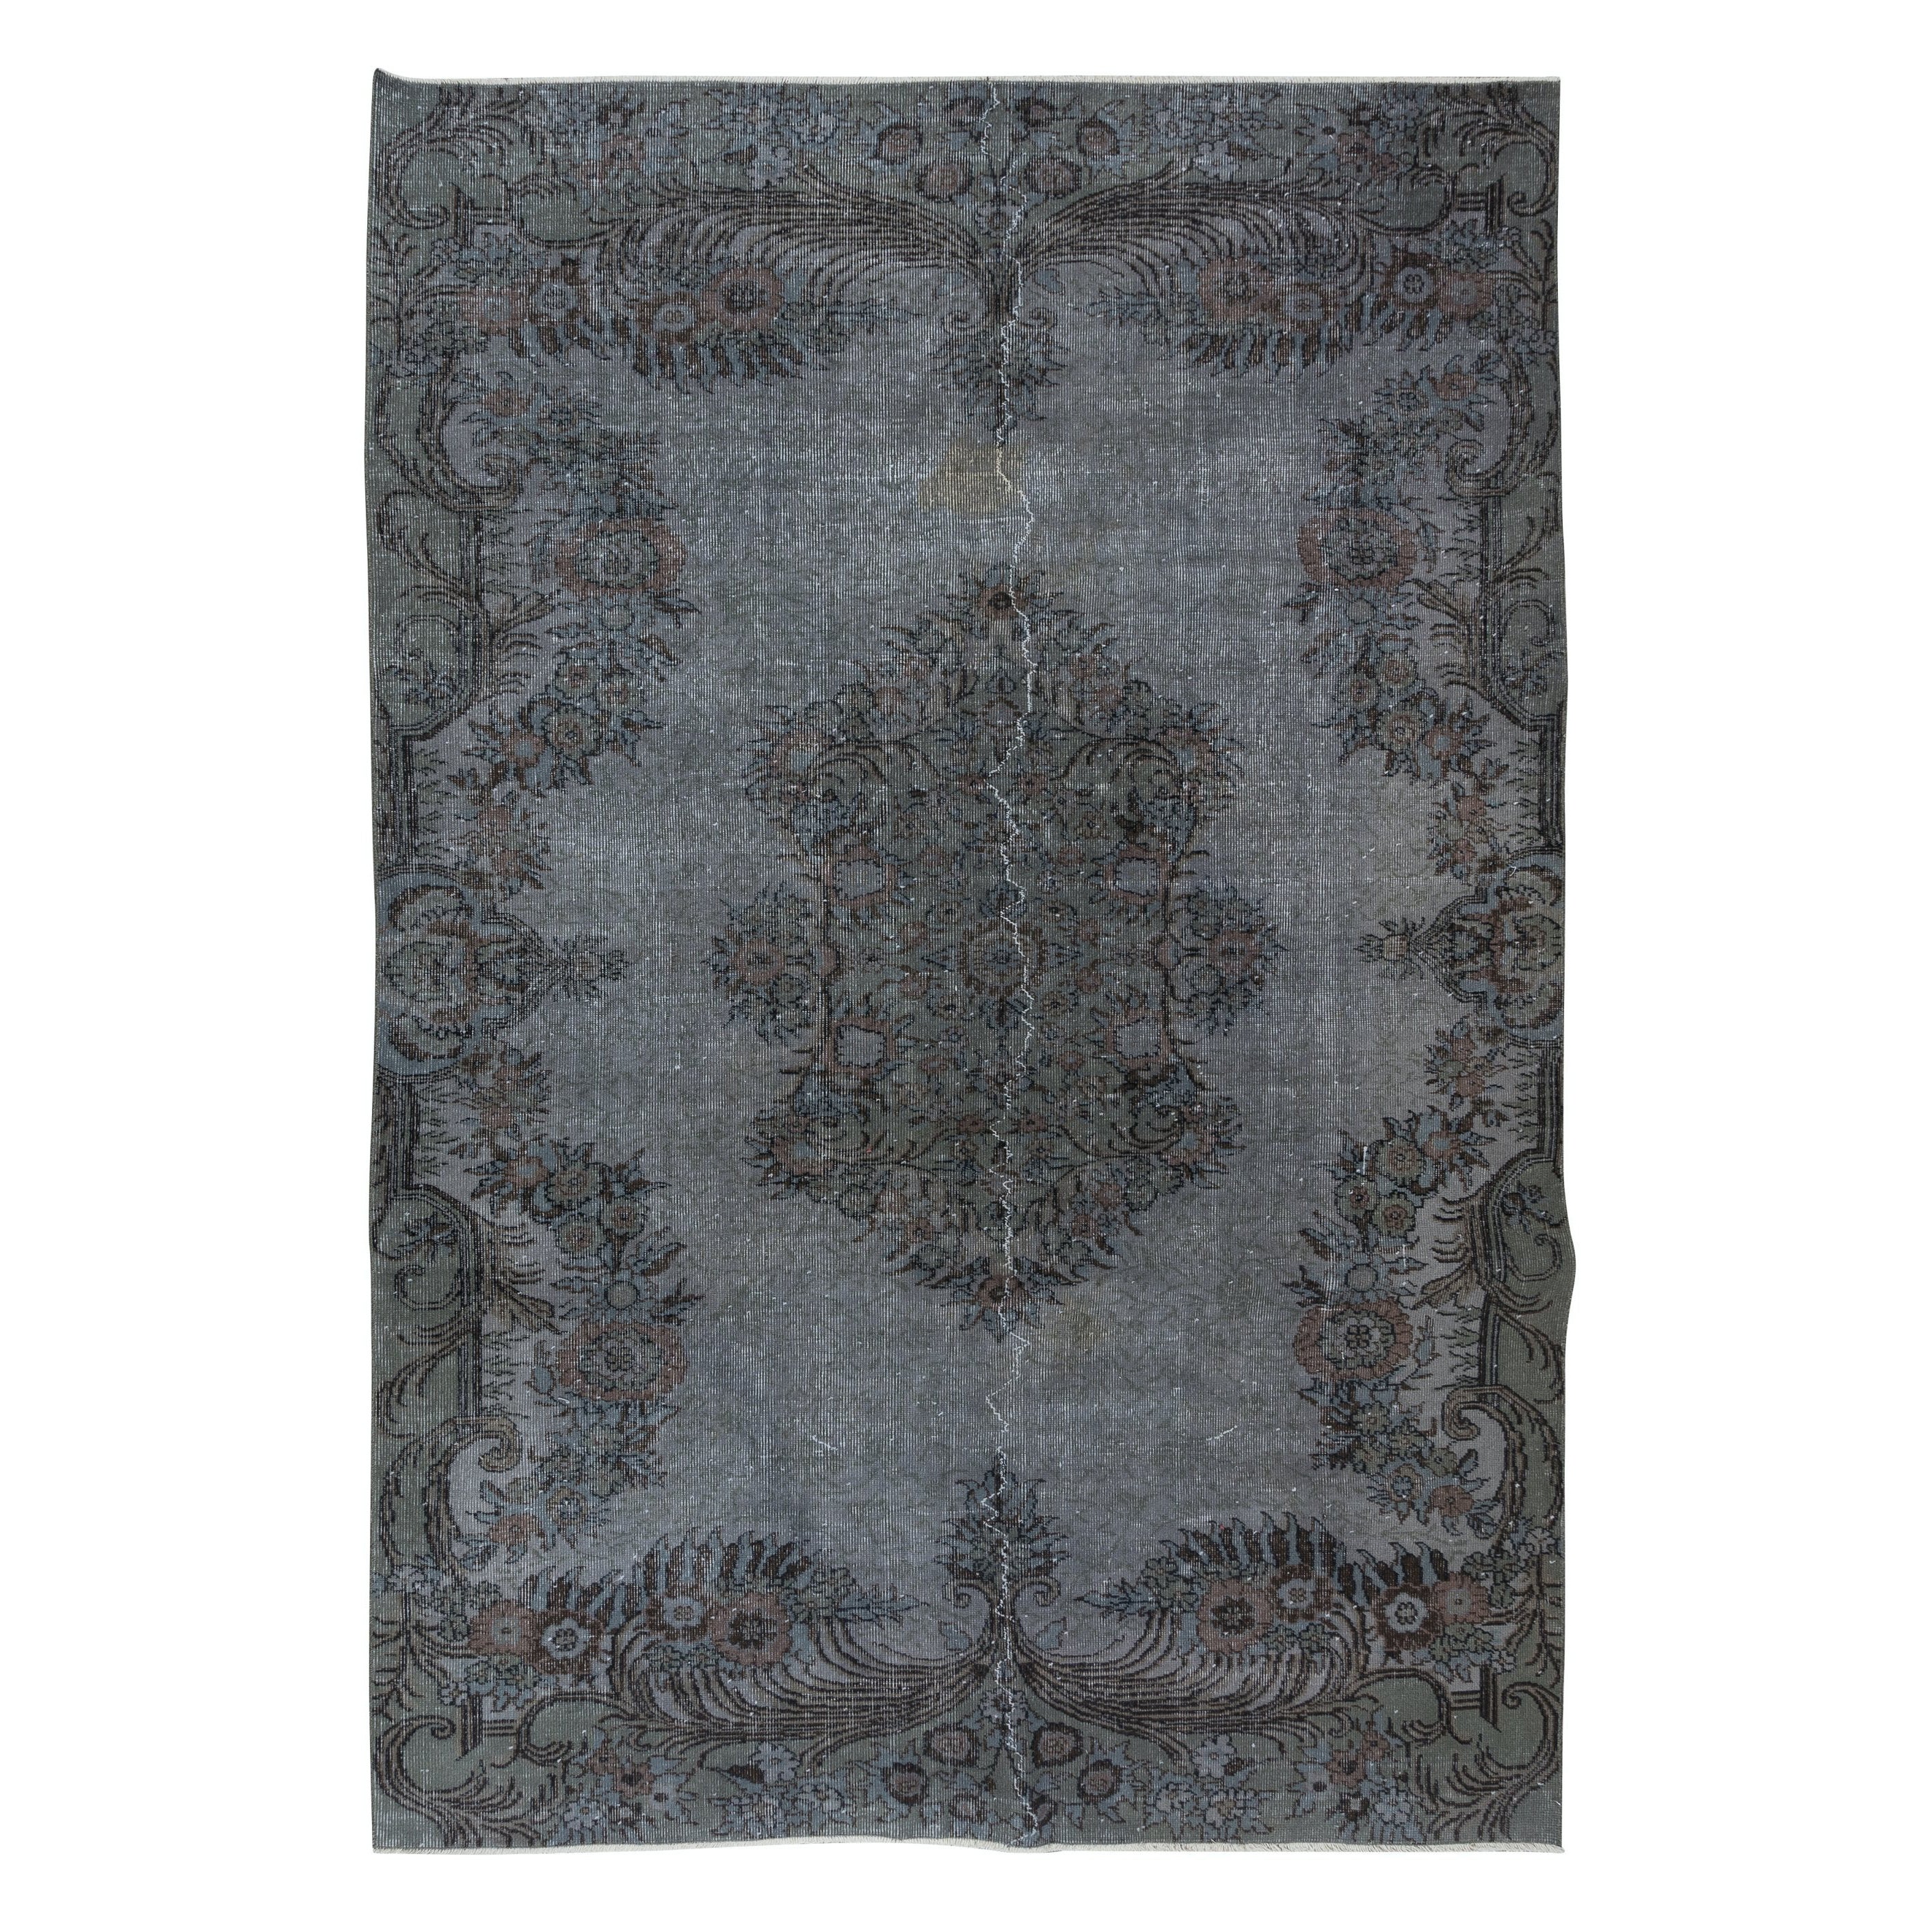 6.7x10 Ft Aubusson inspirierter grauer Teppich für moderne Inneneinrichtung, handgefertigt in der Türkei